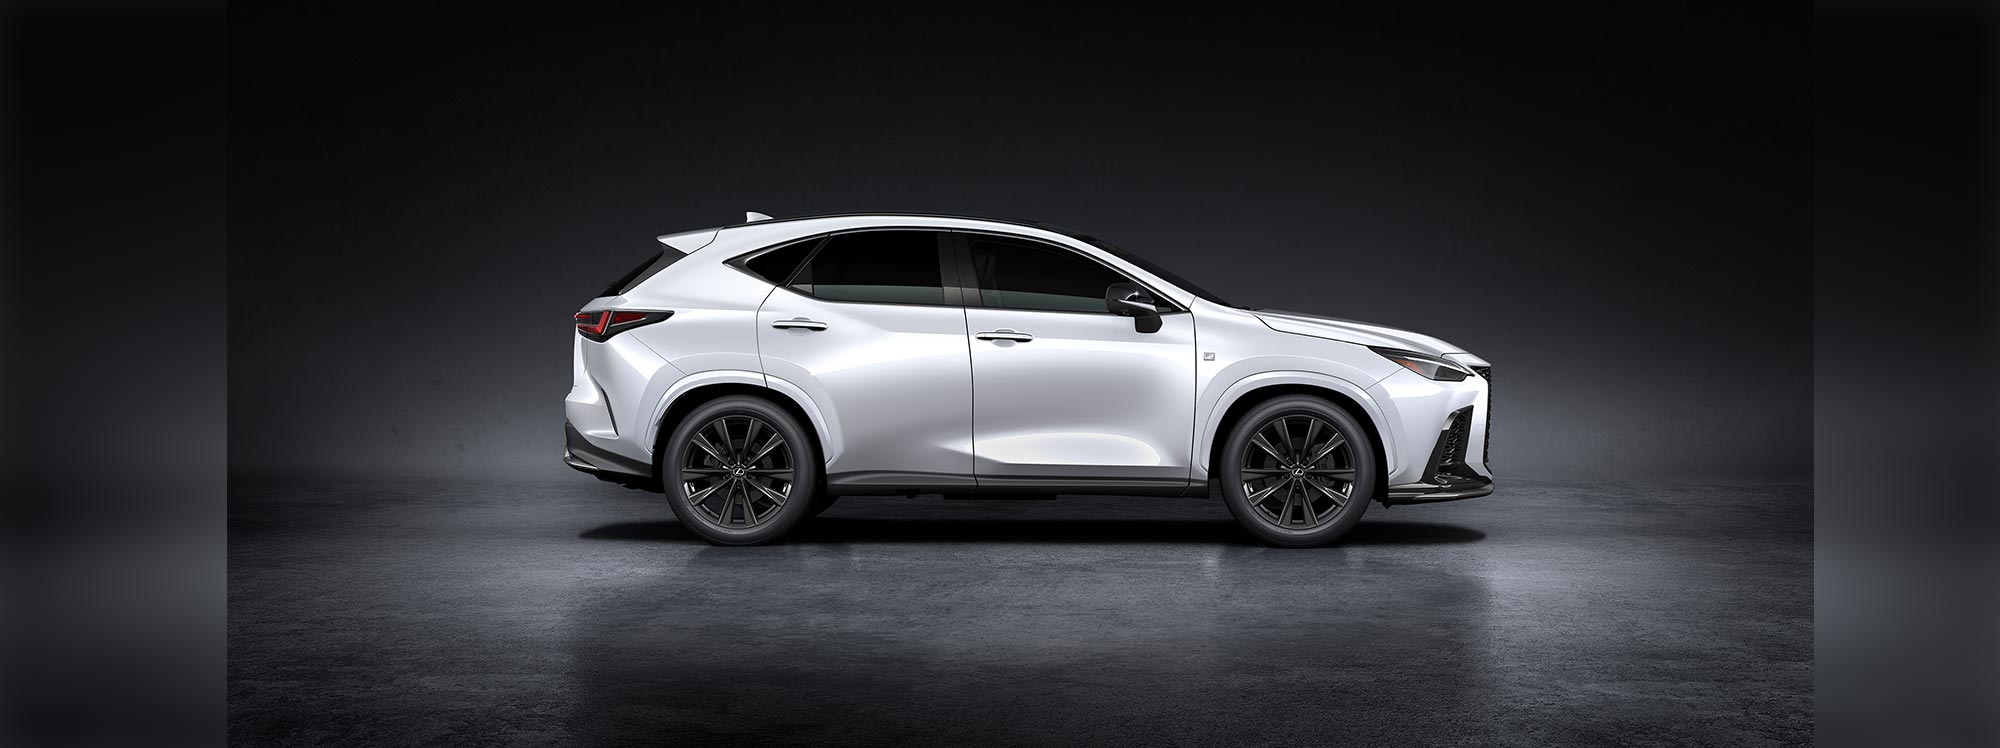 El vehículo que refleja la próxima generación de Lexus